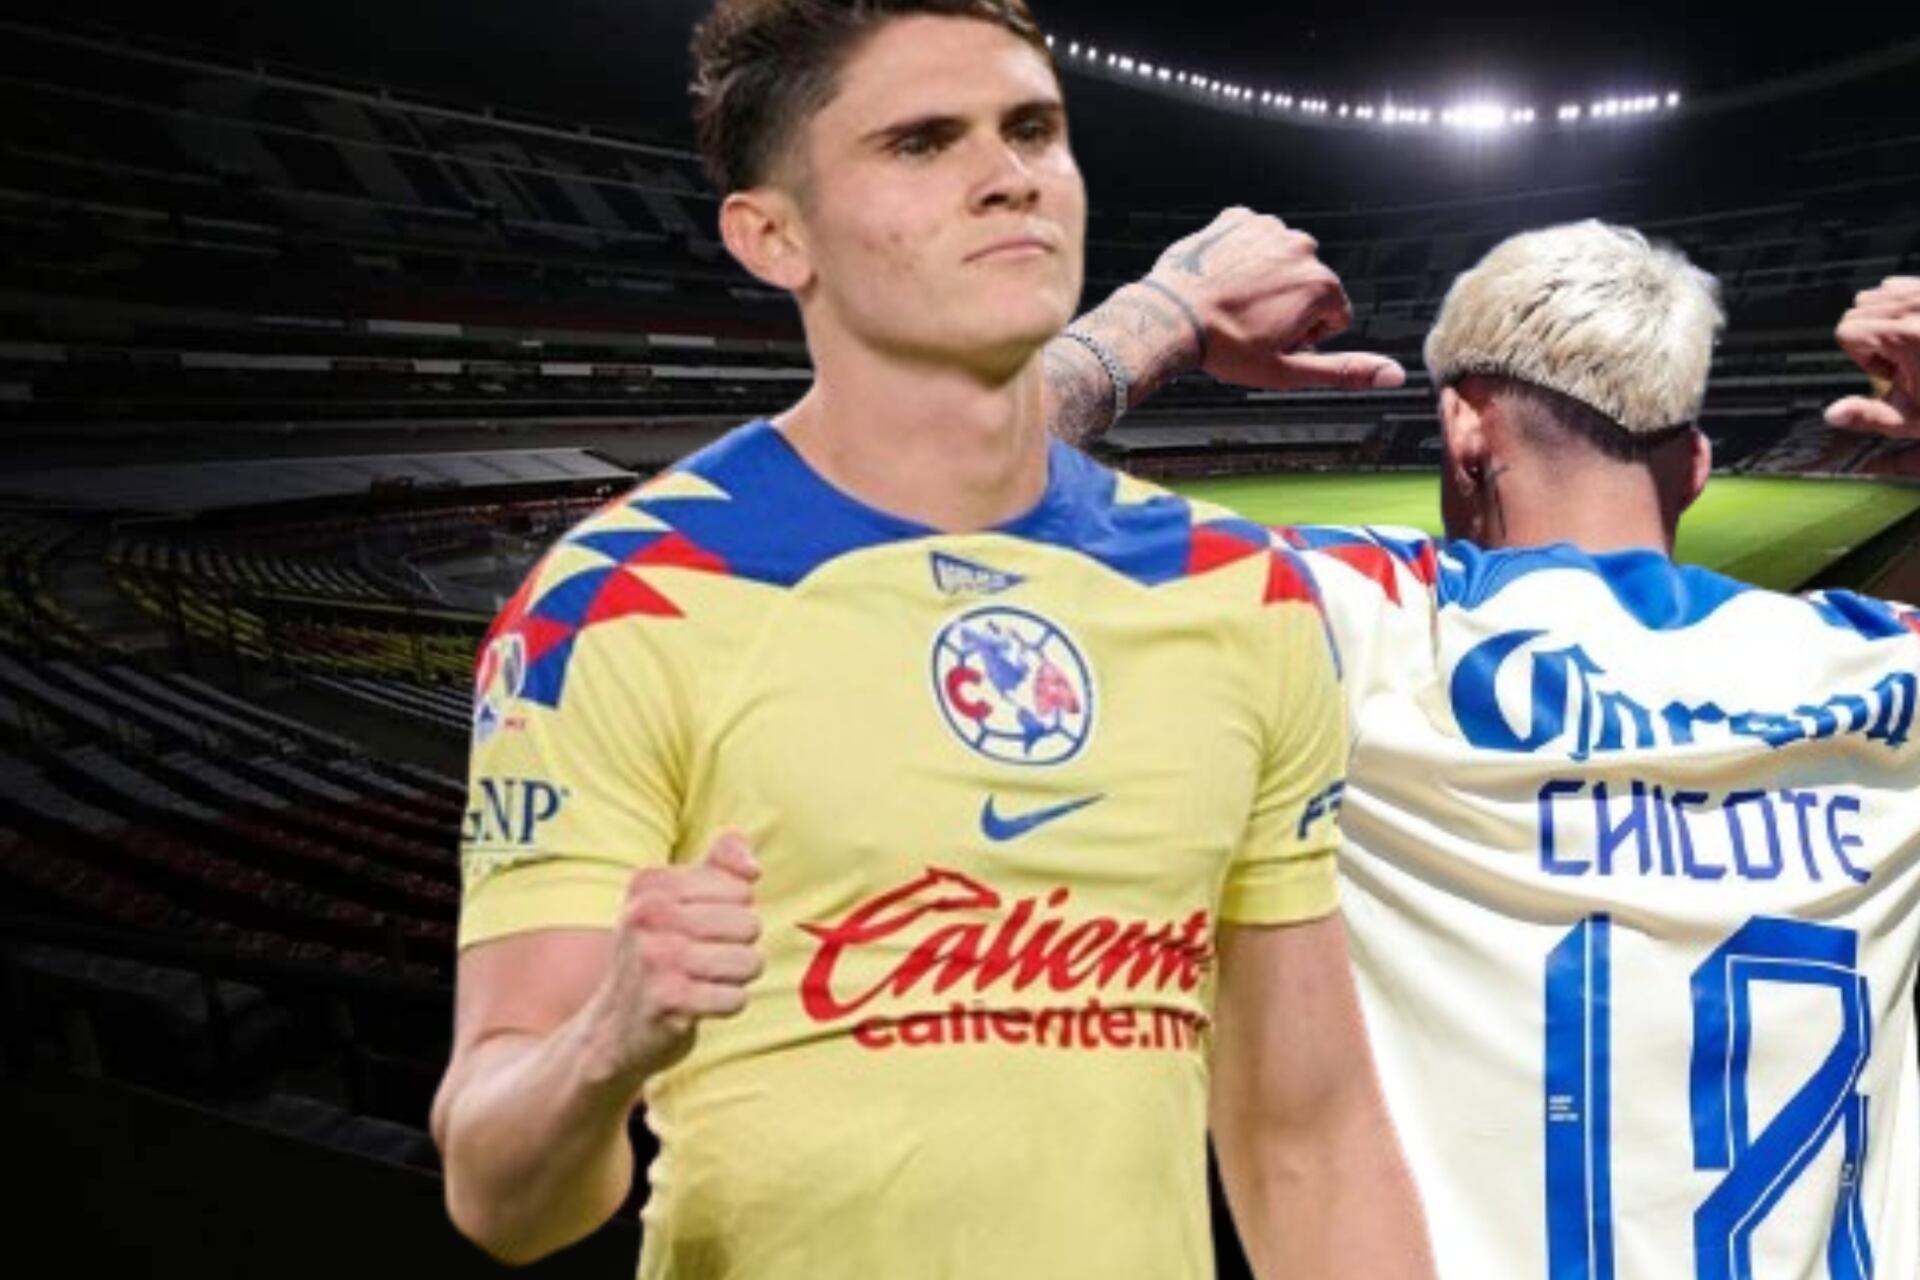 Tras el gol del América, el gesto del Chicote Calderón que prende a todo Guadalajara